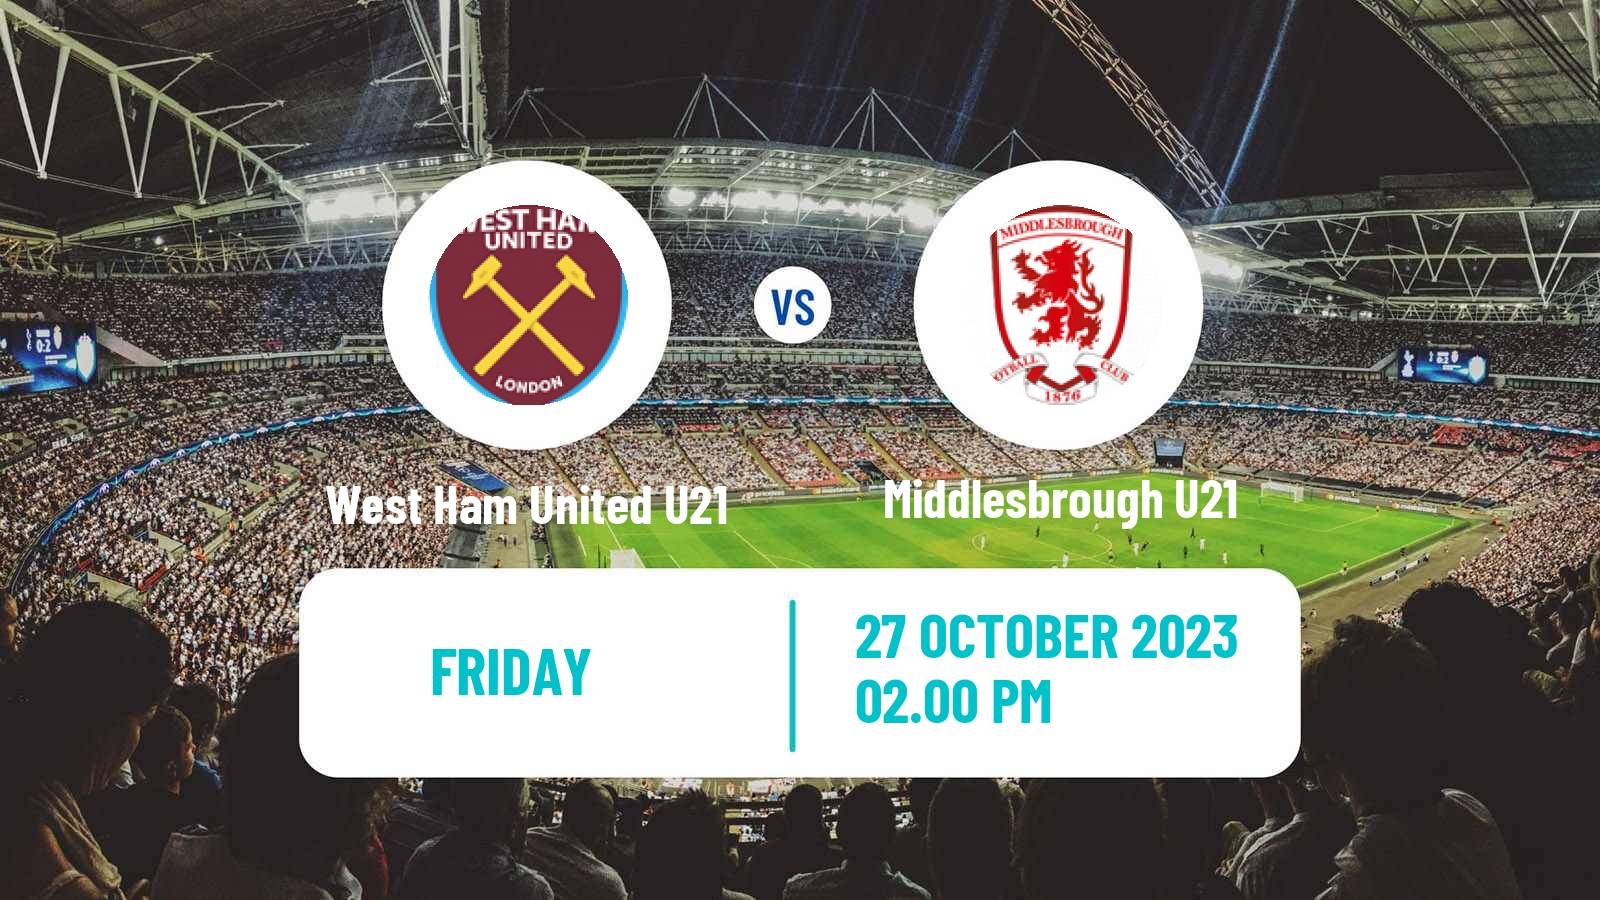 Soccer English Premier League 2 West Ham United U21 - Middlesbrough U21